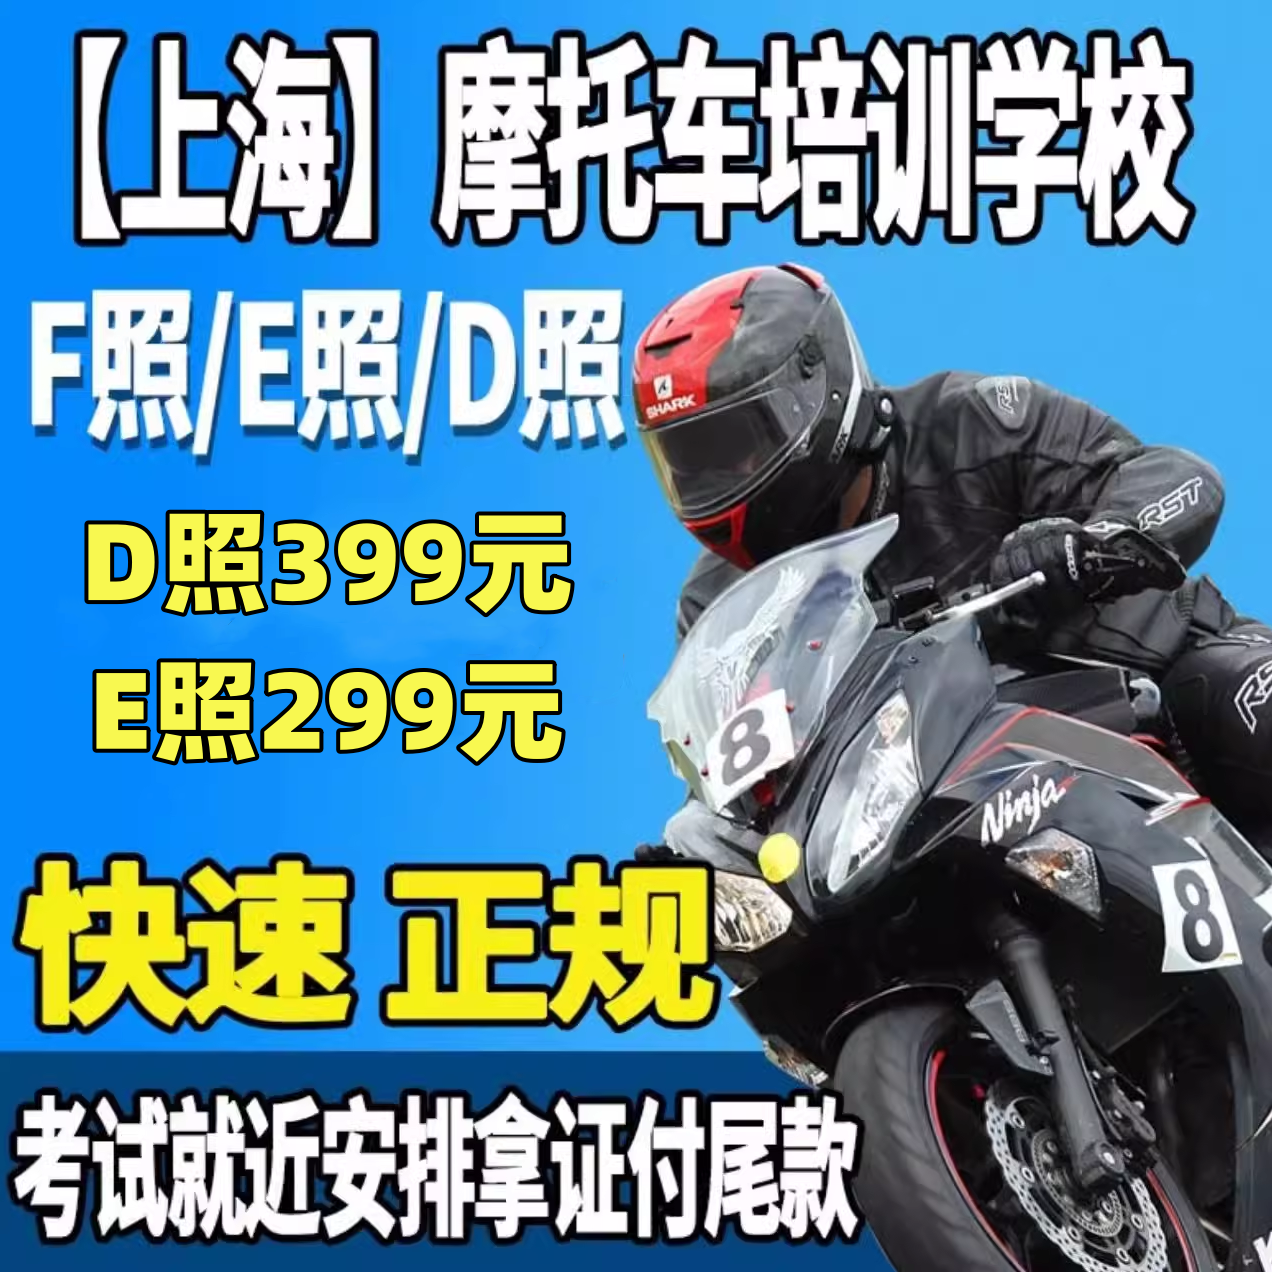 上海哪里学摩托车驾照